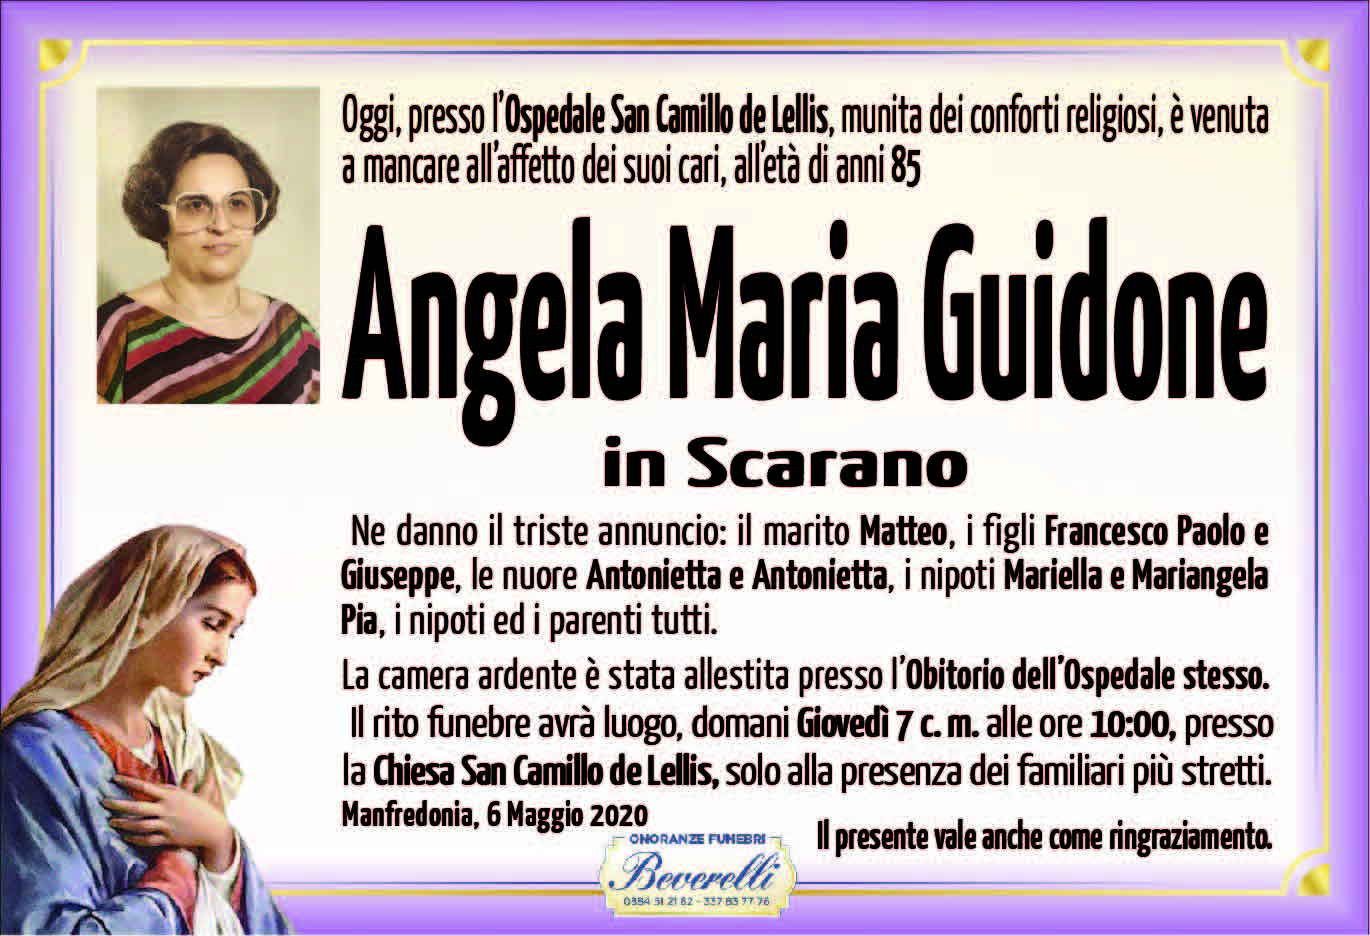 Angela Maria Guidone